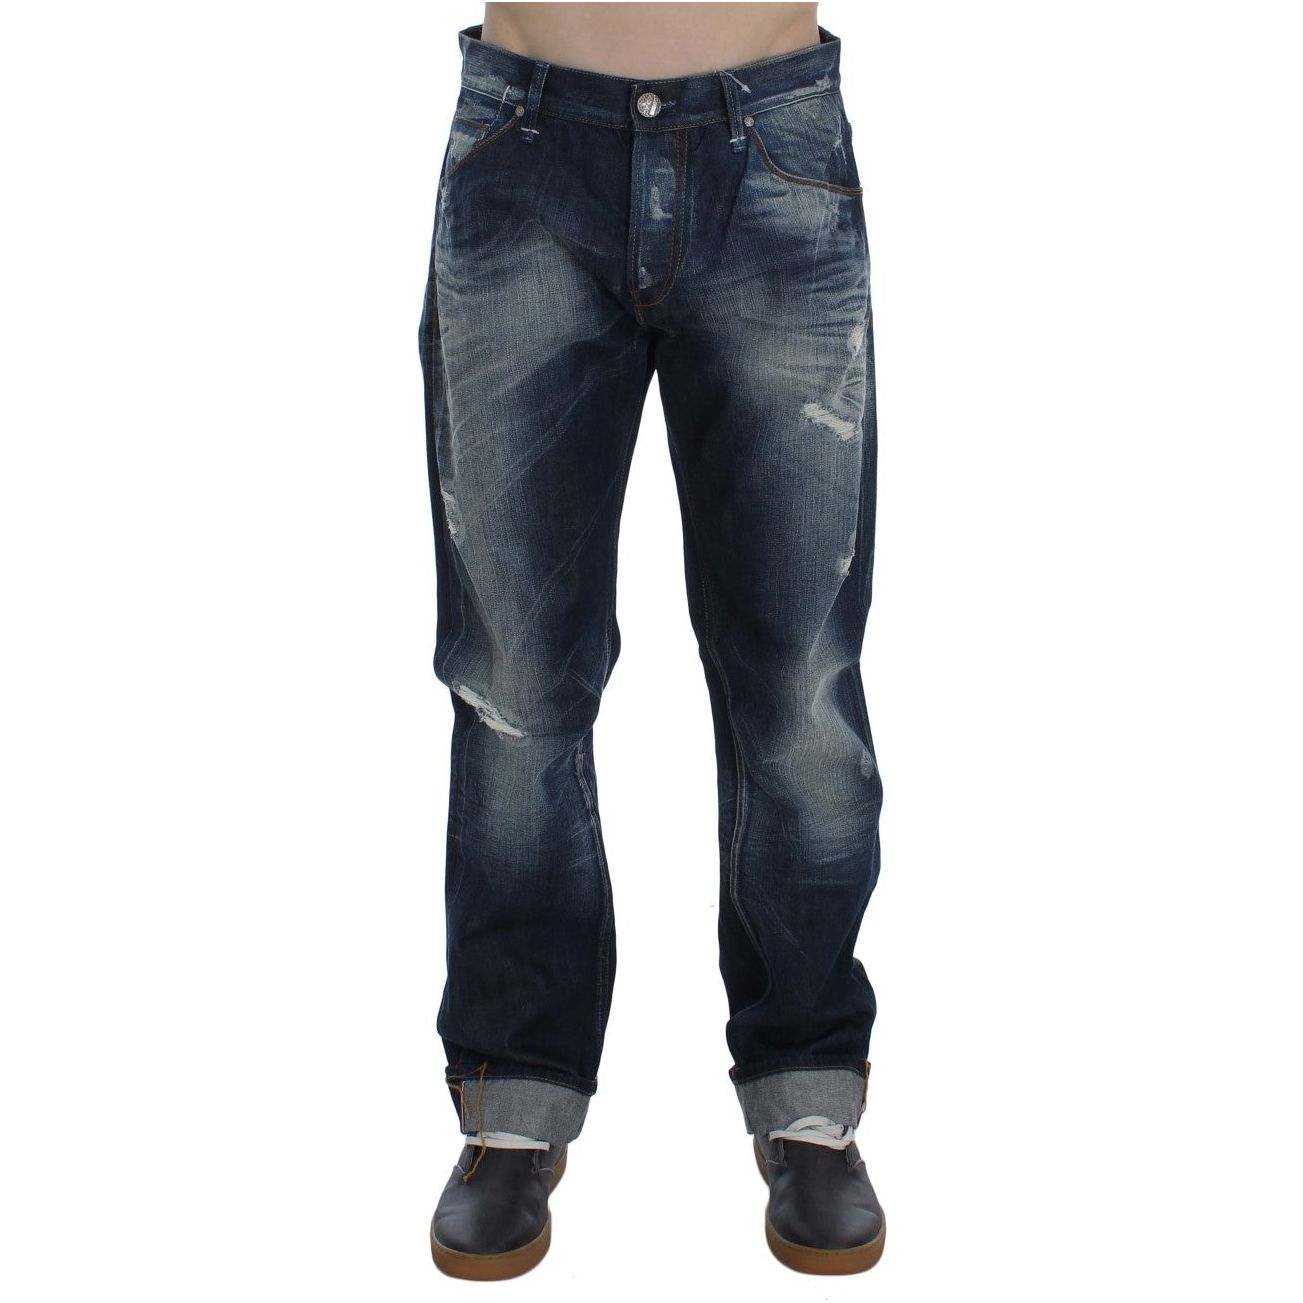 Acht Authentic Regular Fit Blue Wash Jeans blue-wash-cotton-denim-regular-fit-jeans-2 292687-blue-wash-cotton-denim-regular-fit-jeans-4-1.jpg